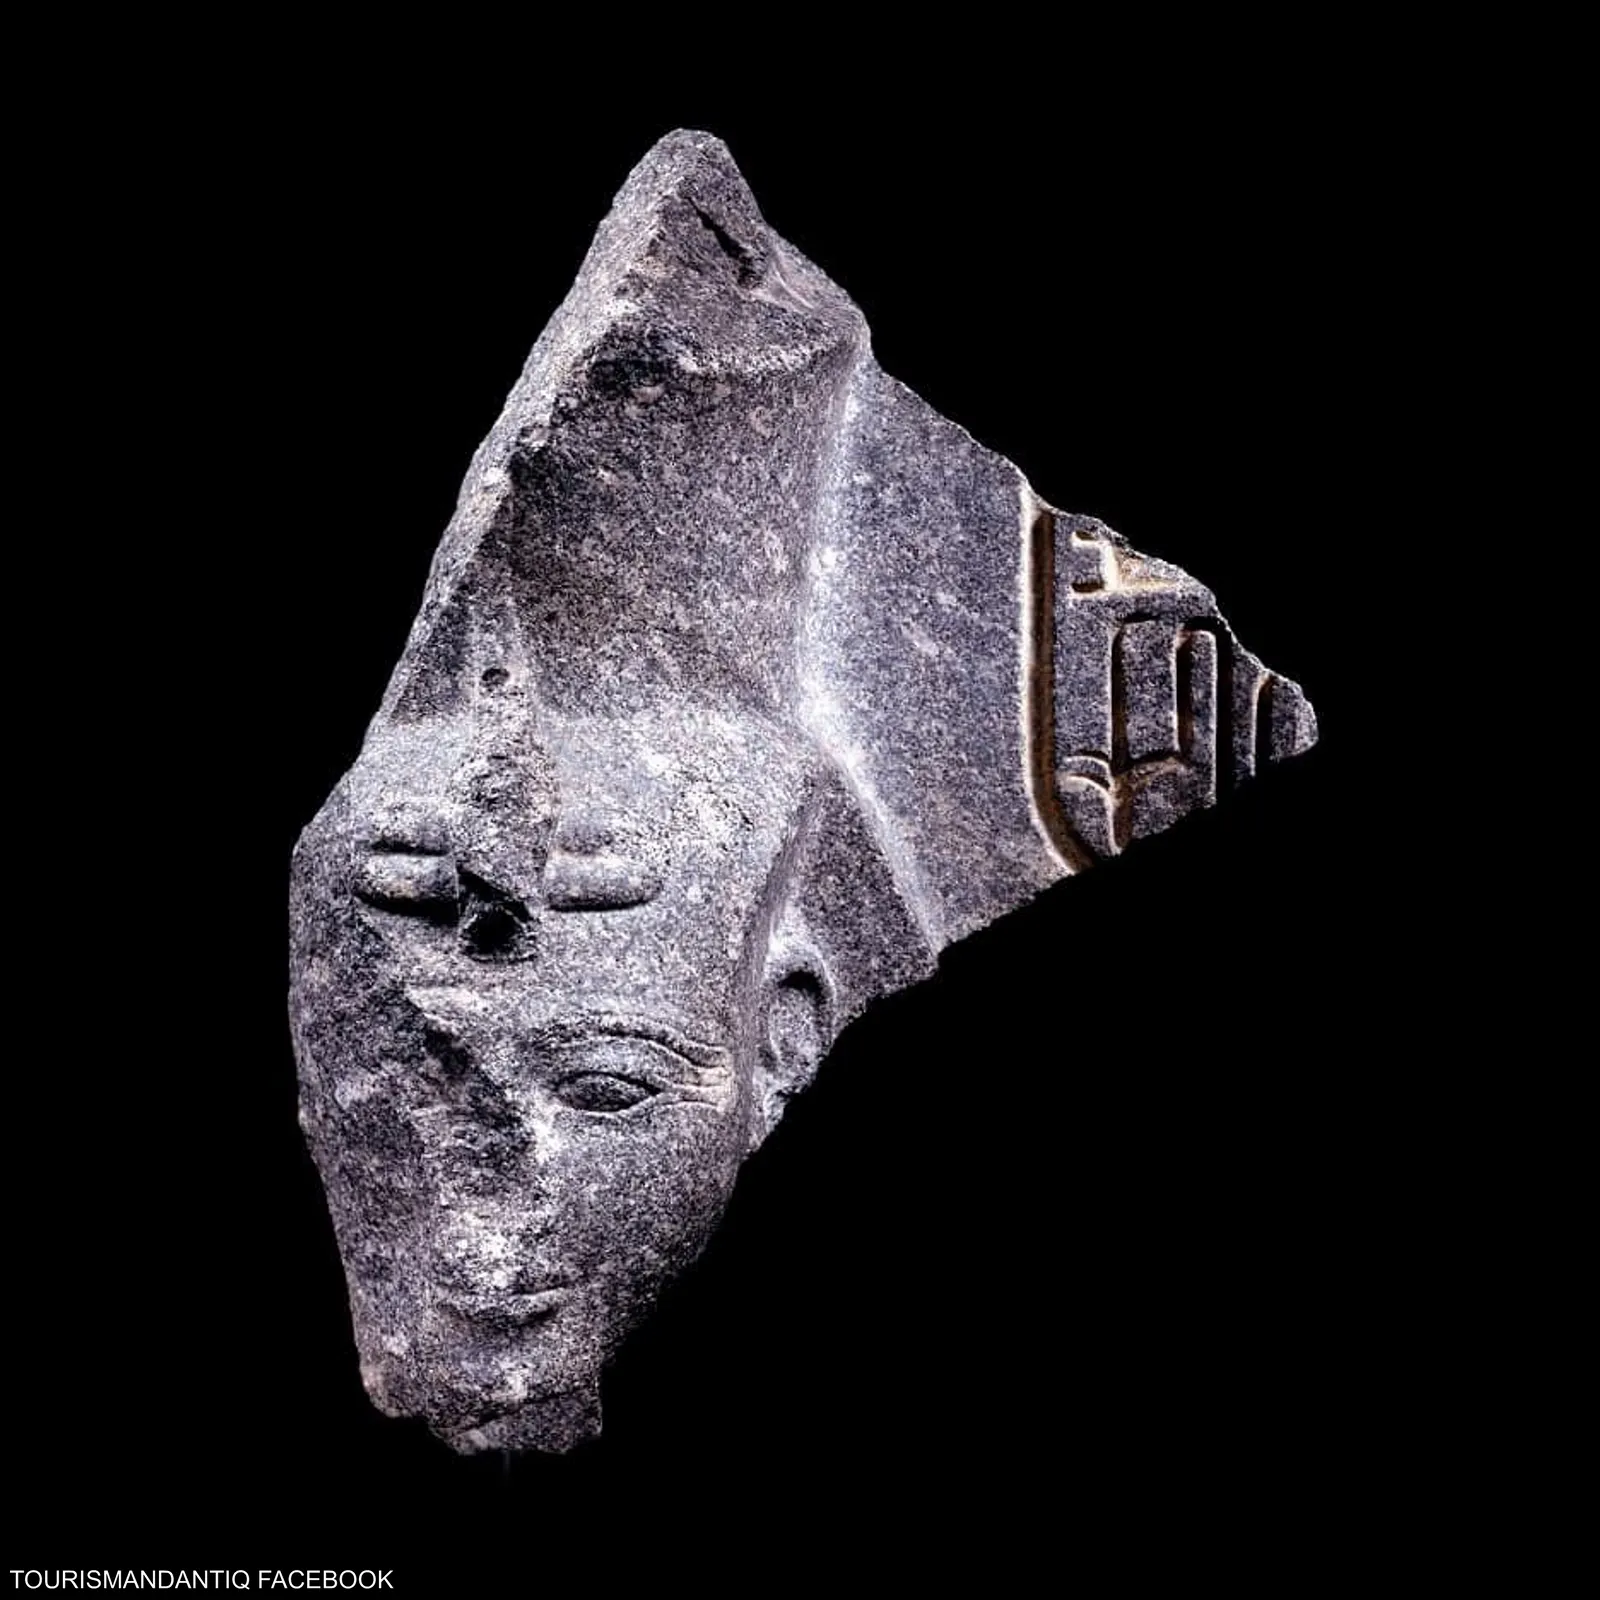 مصر تستعيد رأس تمثال عمره 3400 عام للملك رمسيس الثاني